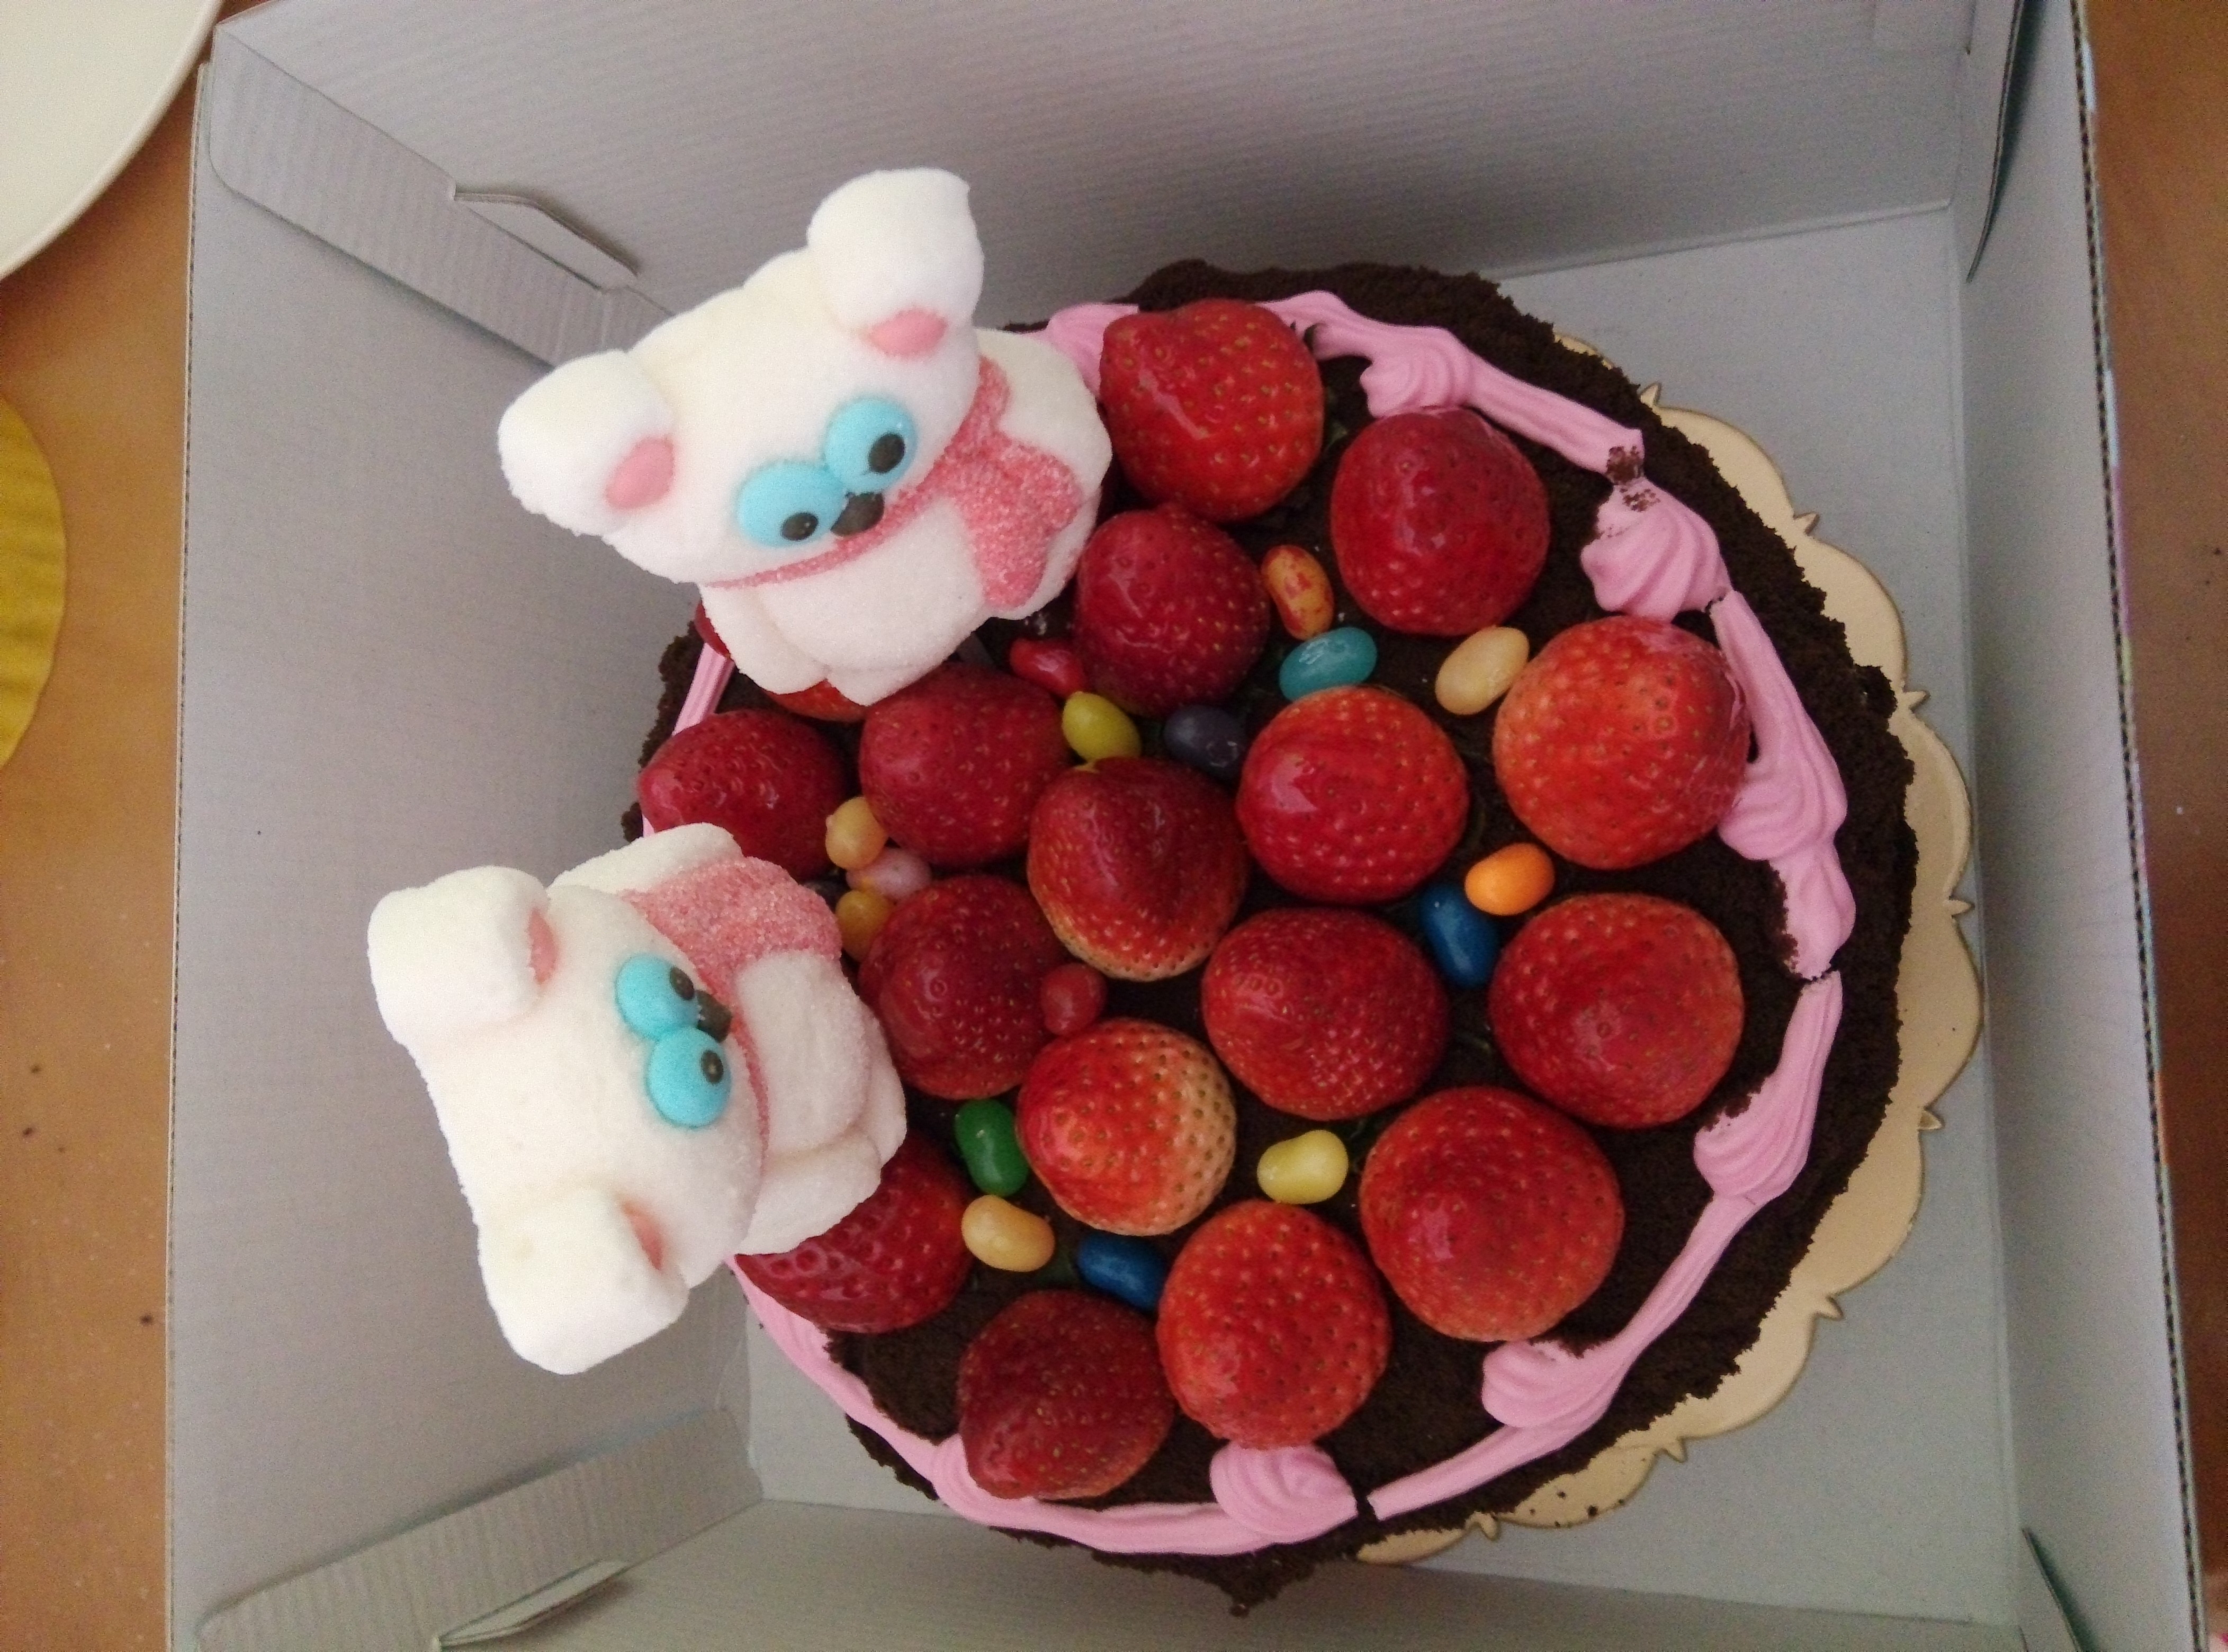 草莓黑森林蛋糕